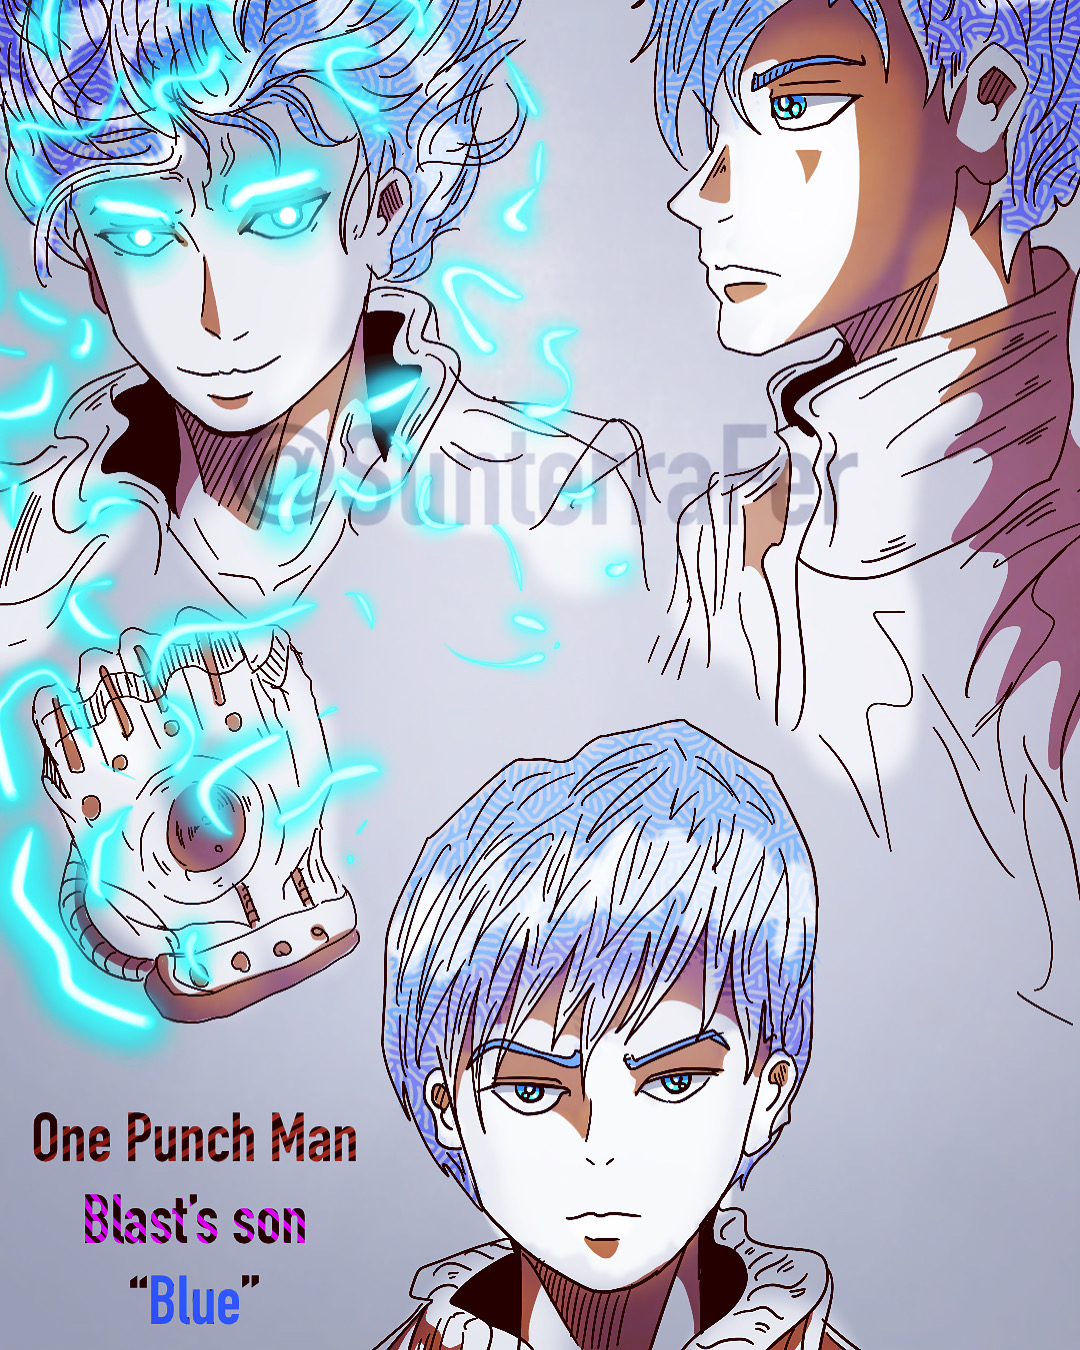 One punch Man Garou Awakened Cosmic Fear Mode v1 by Sunterra92 on DeviantArt